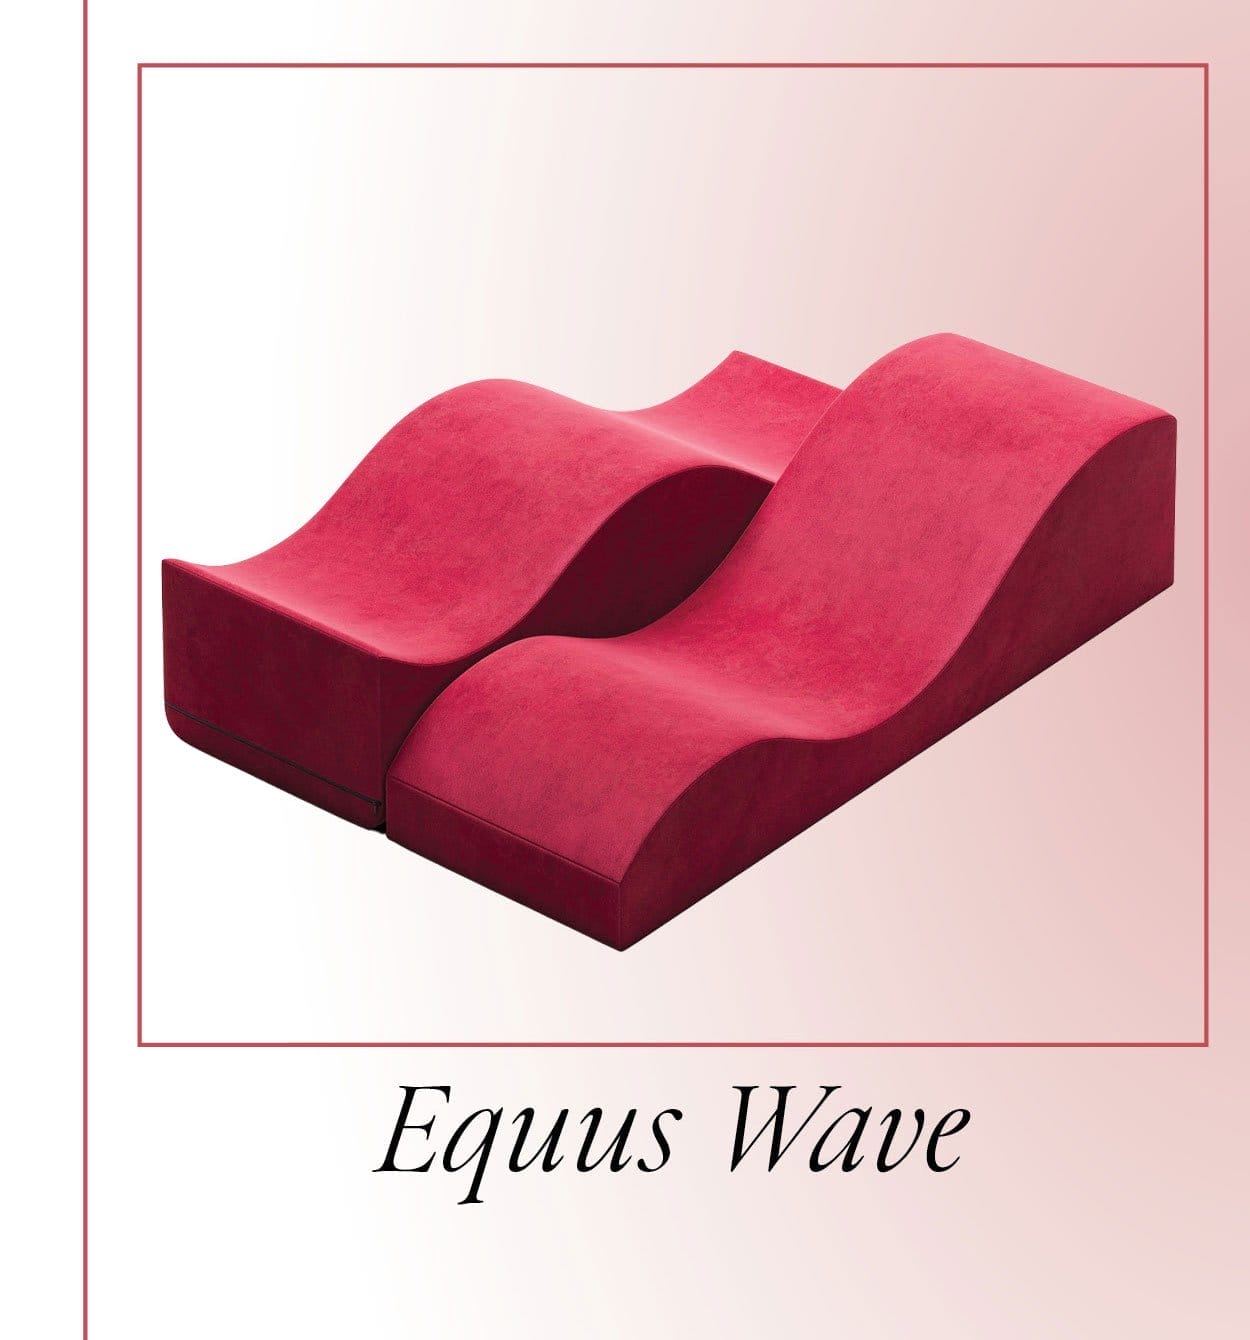 Equus Wave